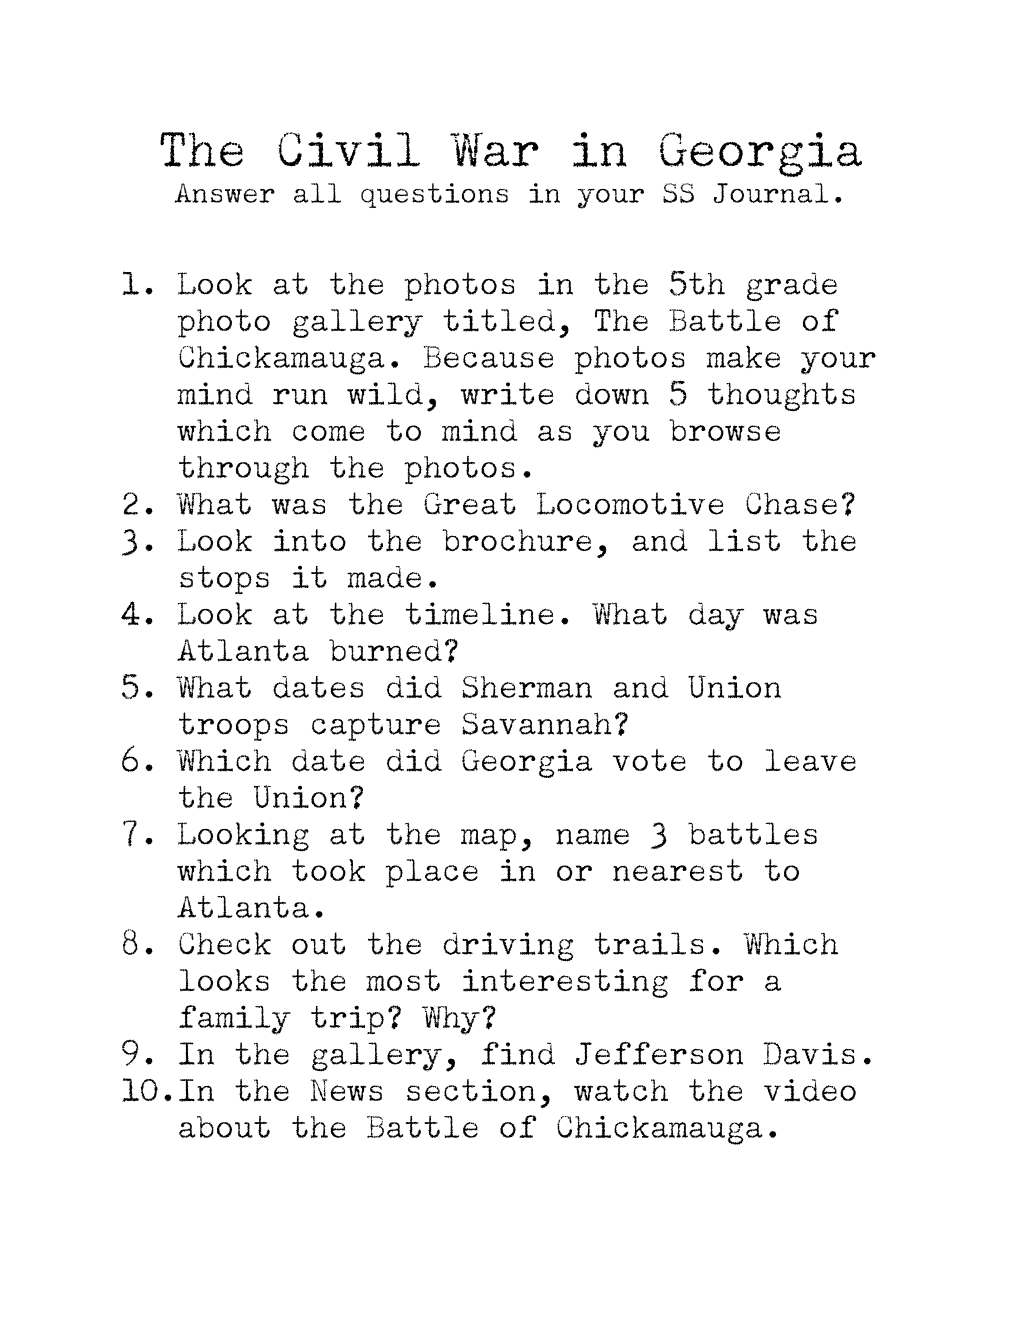 The Civil War in Georgia Webquest